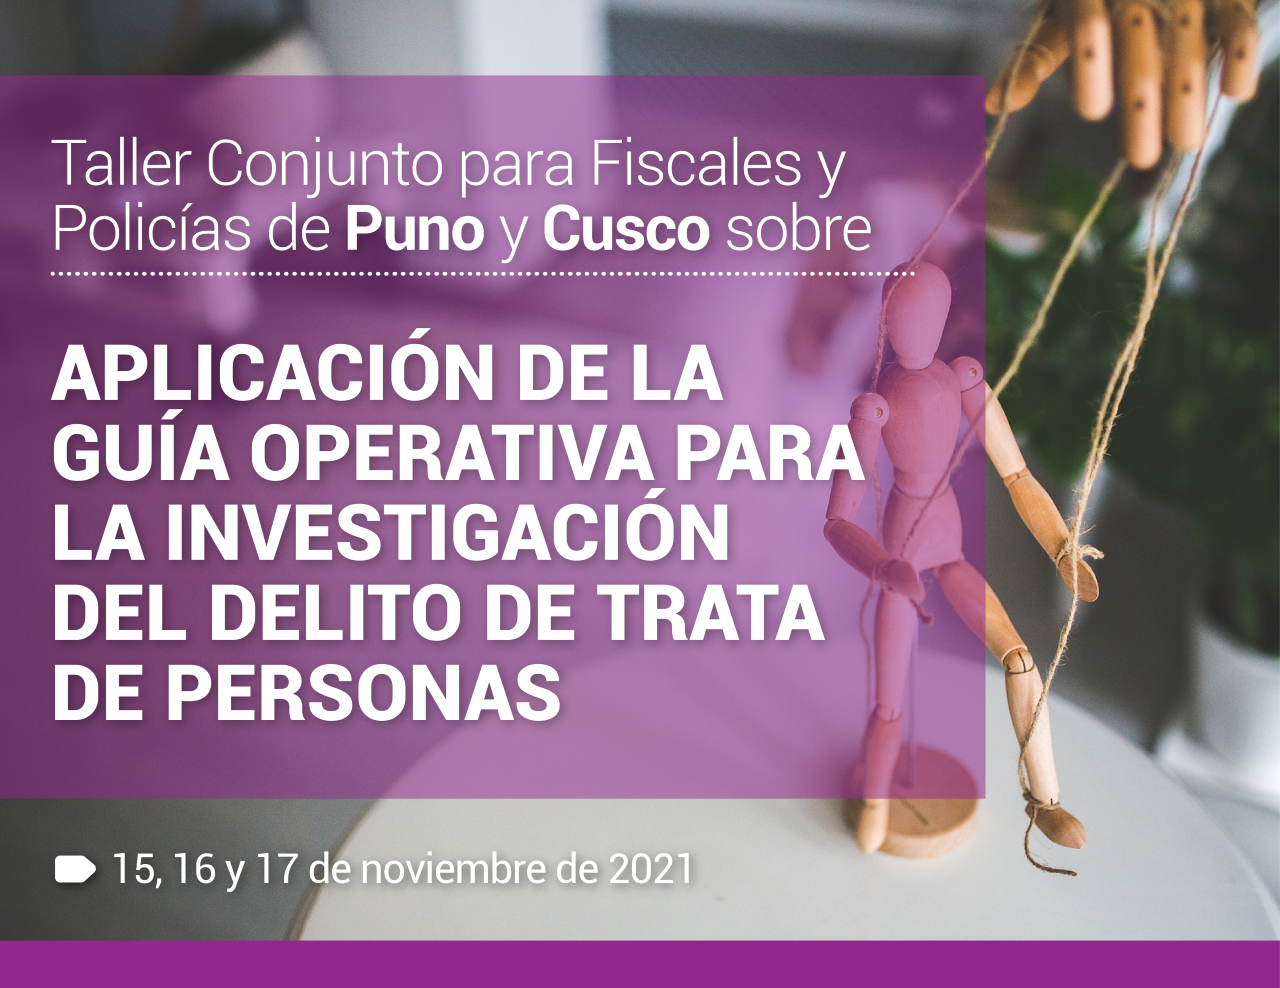 Taller Conjunto para Fiscales y Policías de Puno y Cusco sobre la aplicación de la Guía Operativa para la Investigación del Delito de Trata de Personas